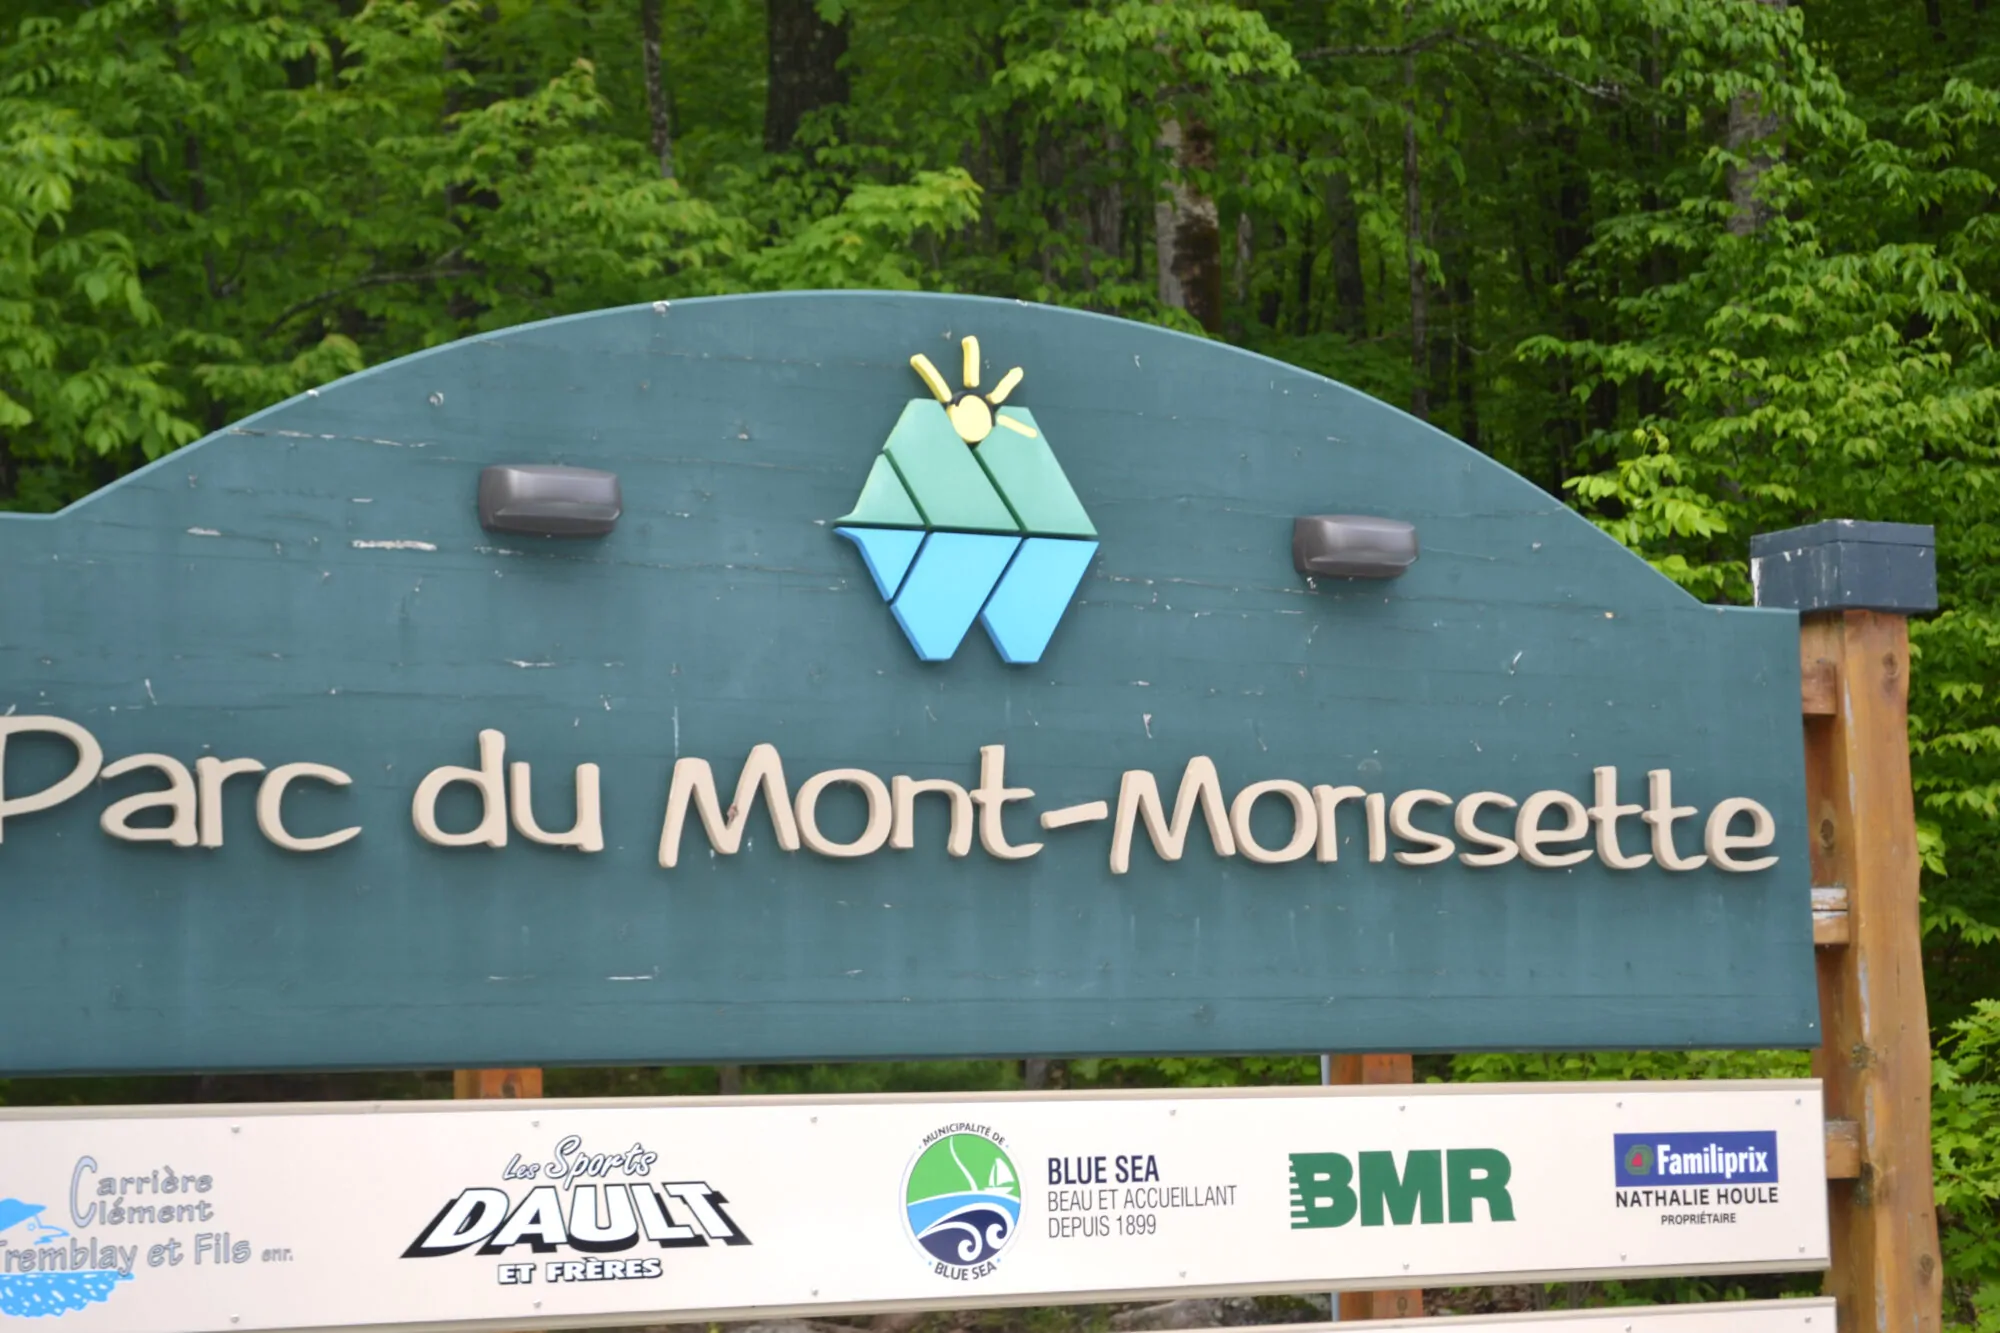 Parc du Mont Morissette - Blue Sea